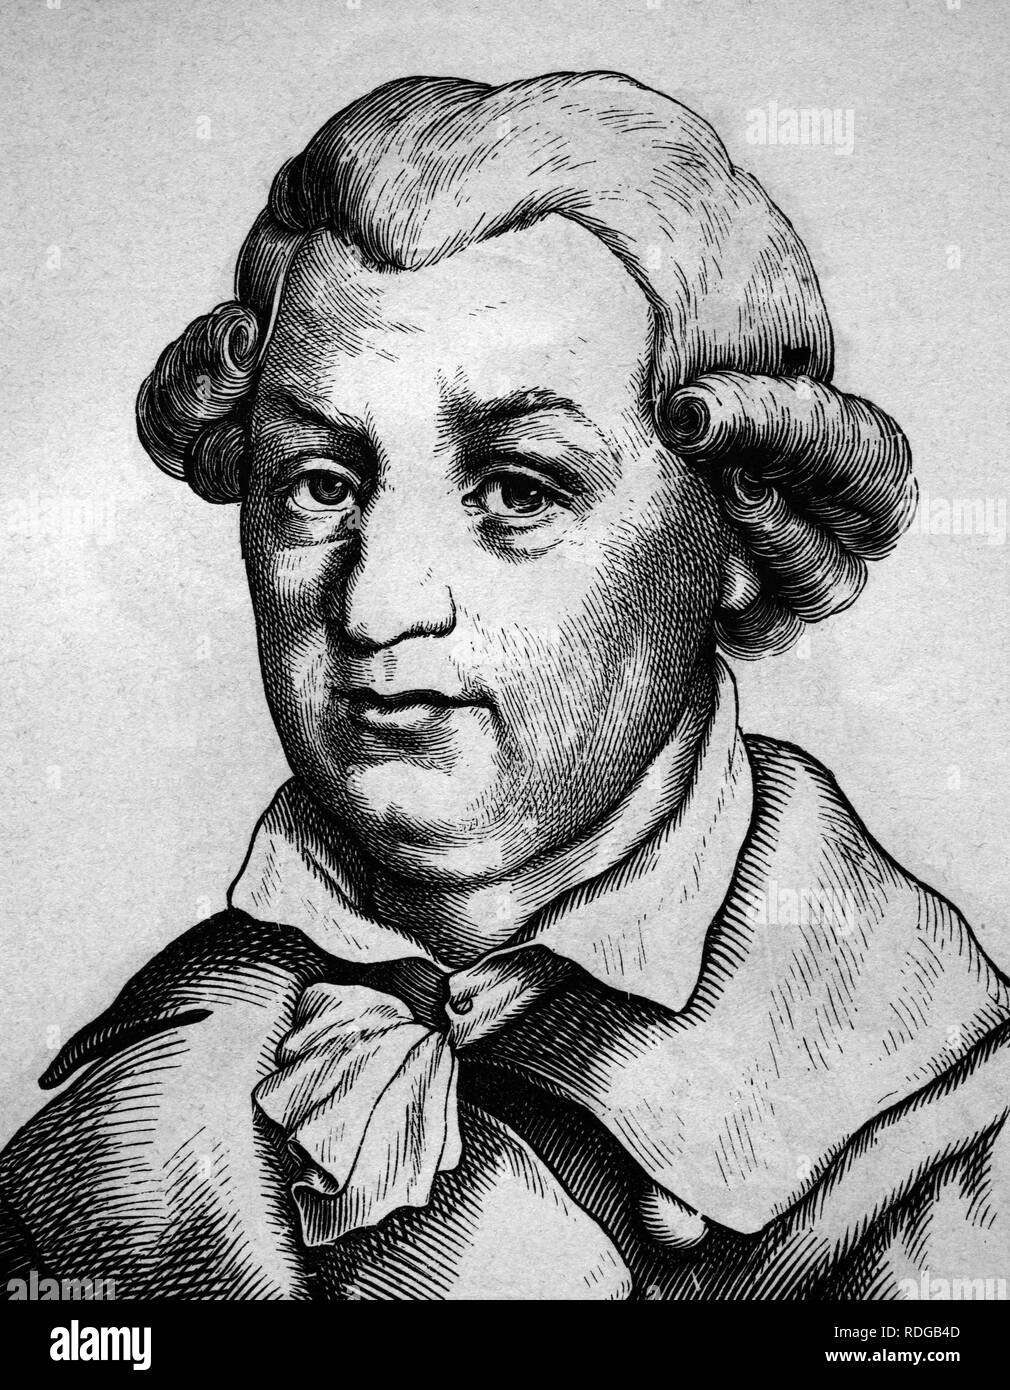 Johann Karl August Musaeus, 1735 - 1787, portrait, historic illustration, 1880 Stock Photo